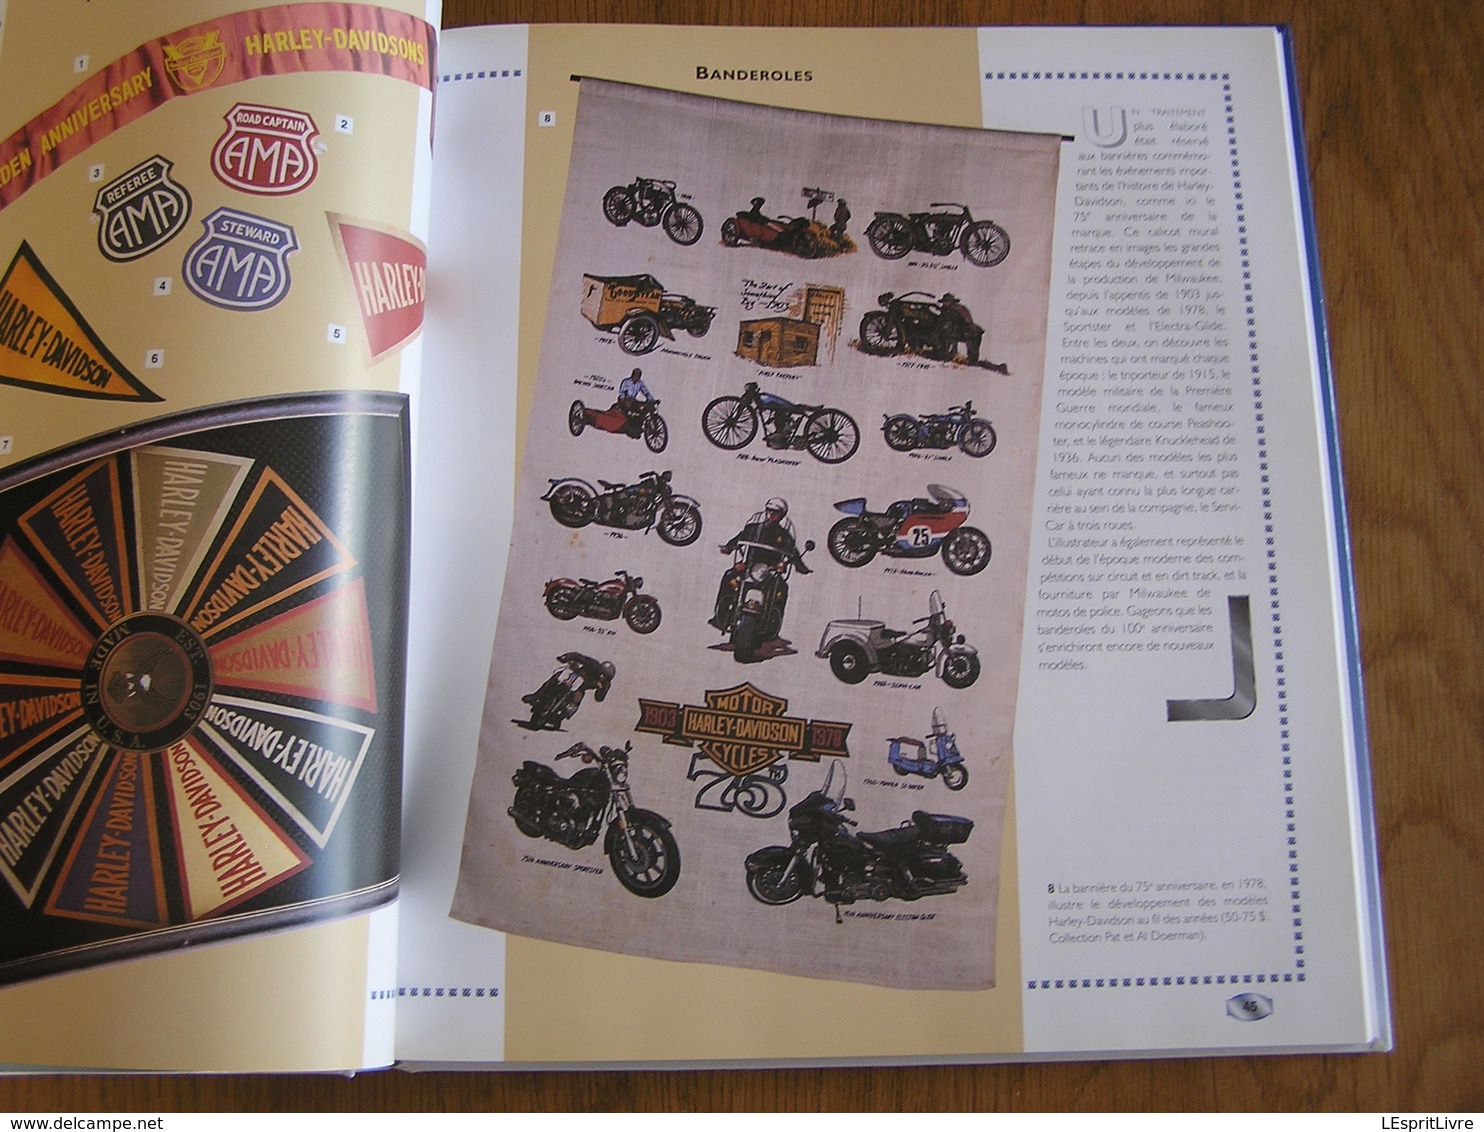 L'UNIVERS HARLEY-DAVIDSON Objets de Collection Moto Motorcycle Affiche Jouet Documentation Commerciale Ceinture Casque